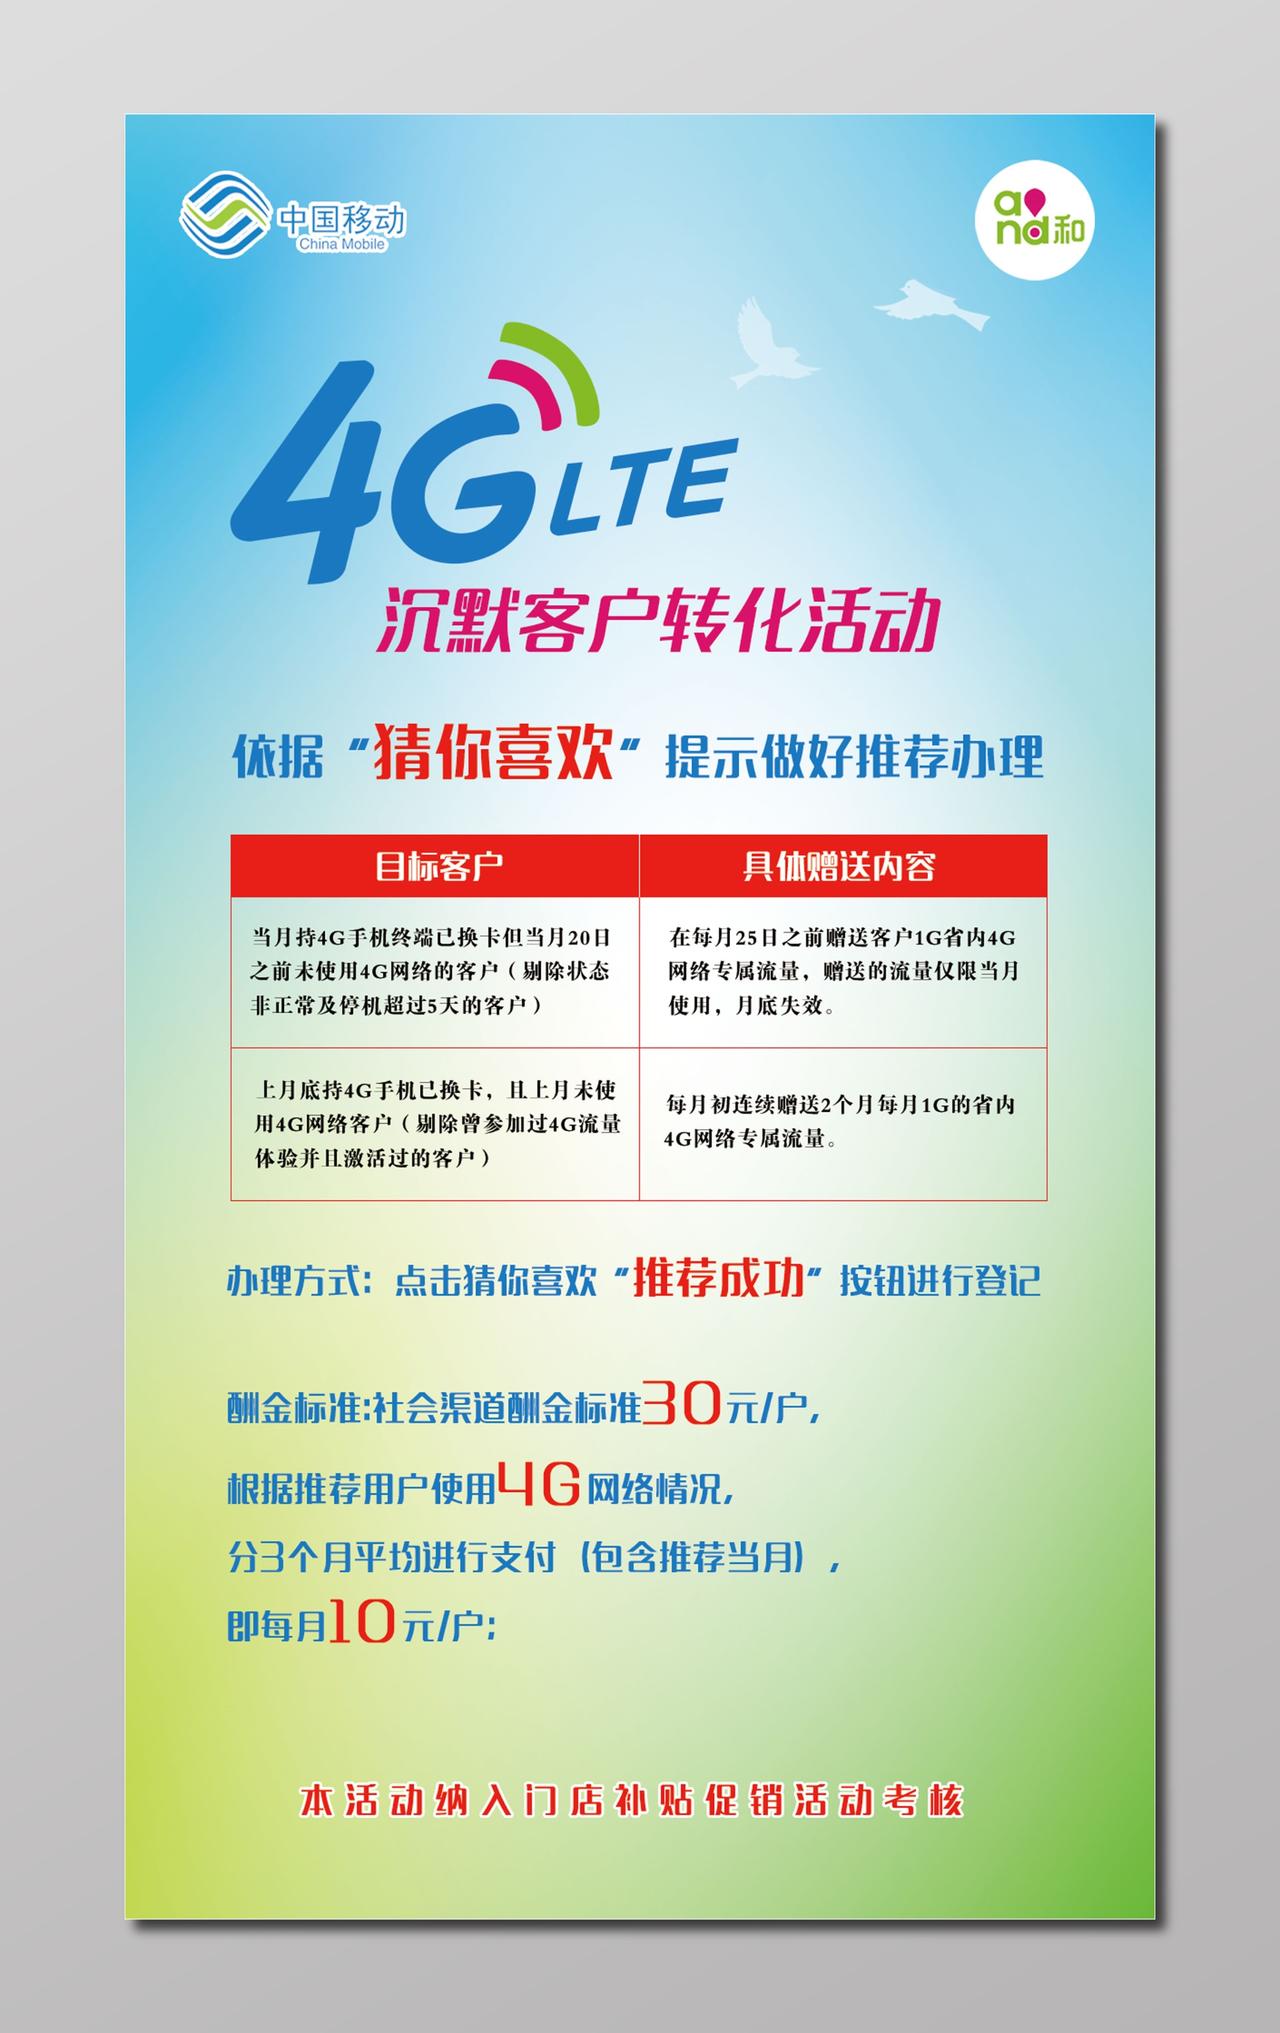 4G沉默客户转化中国移动通讯活动海报